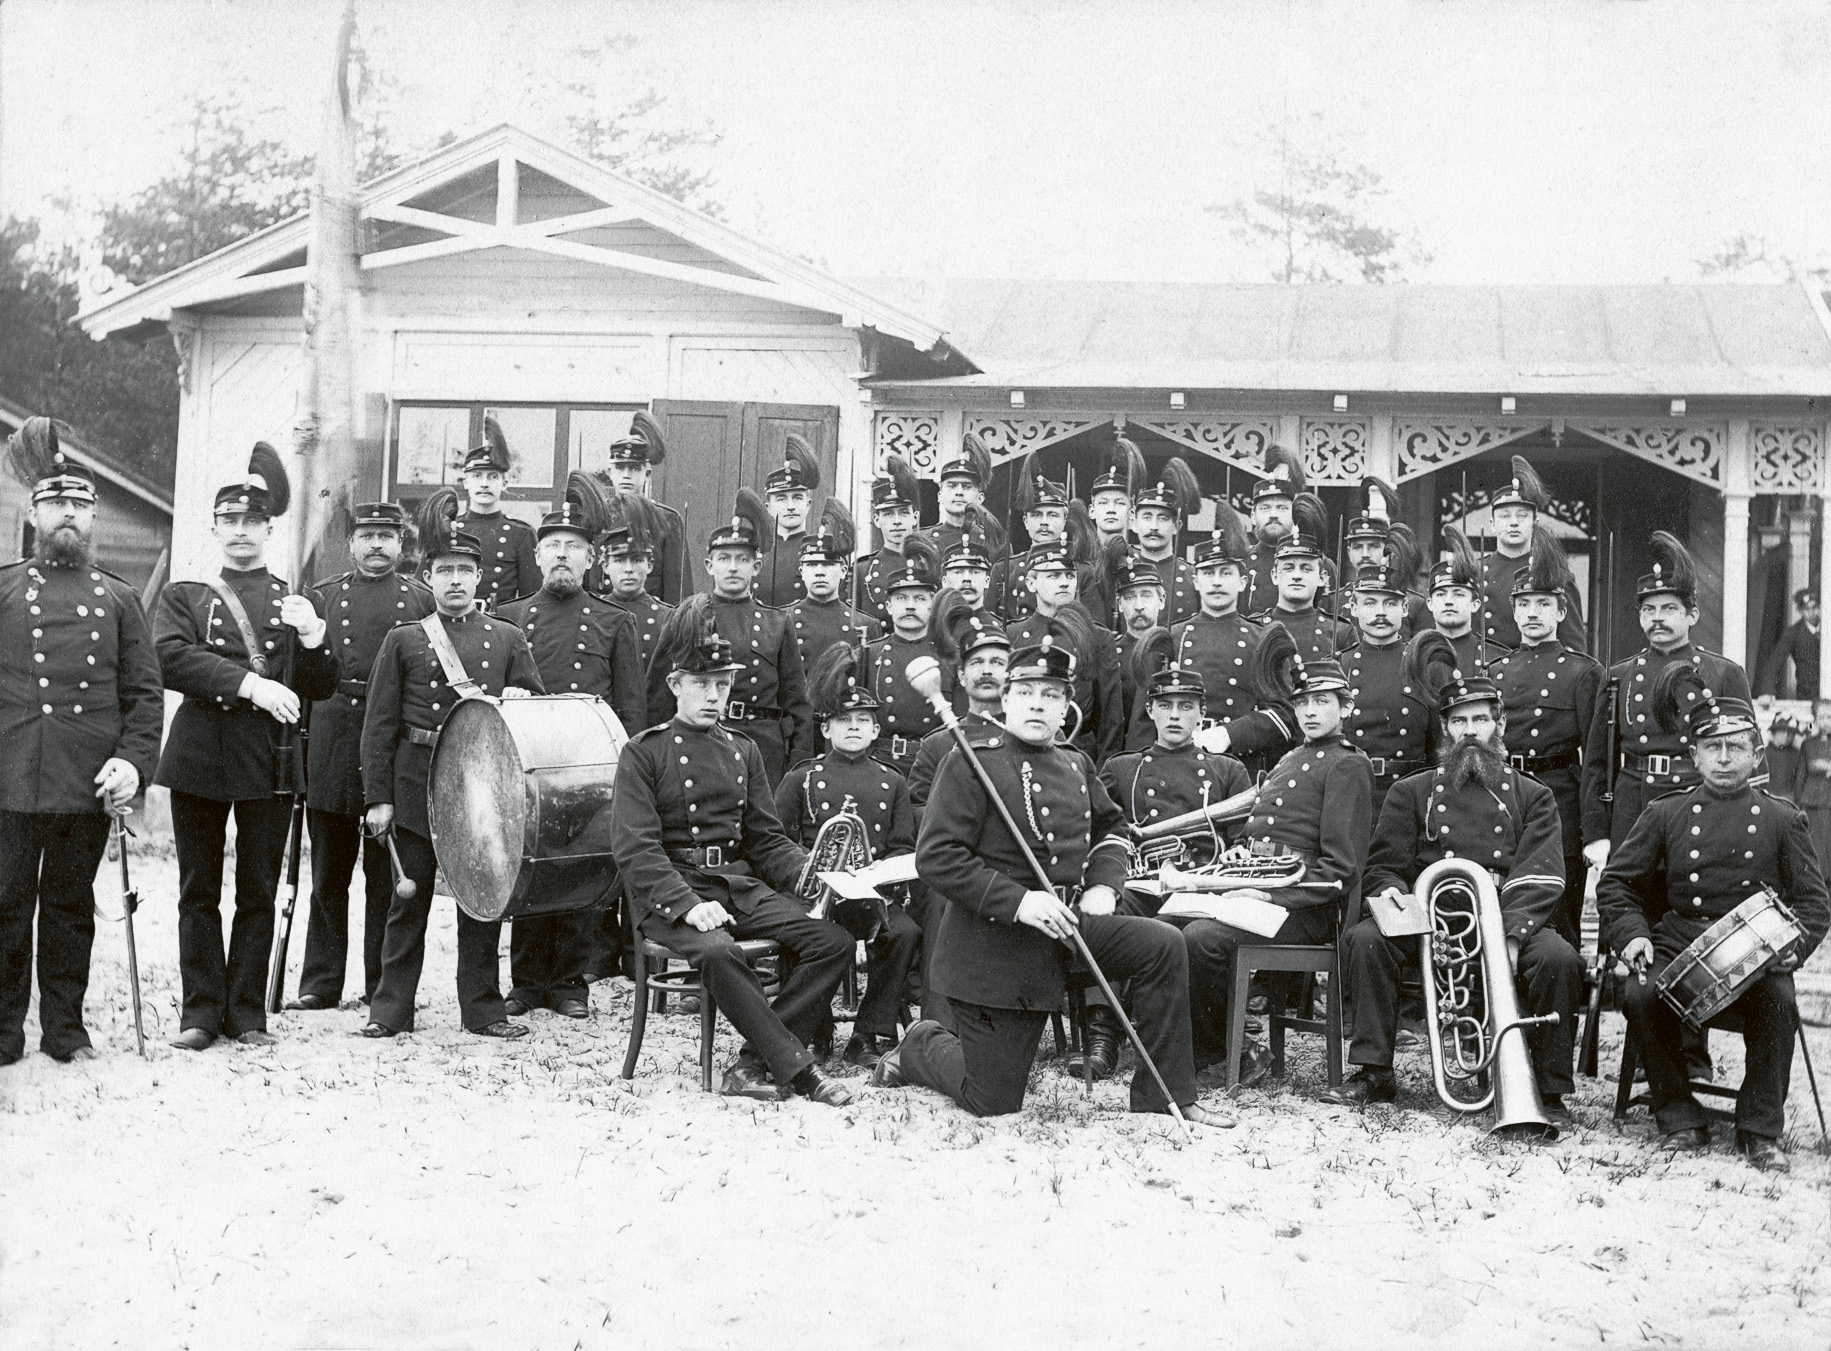 Skarpskyttekårens musikkår på 1870-talet. Befälhavare P. Ask ses längst till vänster. Gördel-makarmästare Carl Ludvig Lindberg (1848- 1908) med yvigt skägg, sitter som nummer två från höger. Flera anställda hos Linde-bergs gördelmakeri finns med i kåren